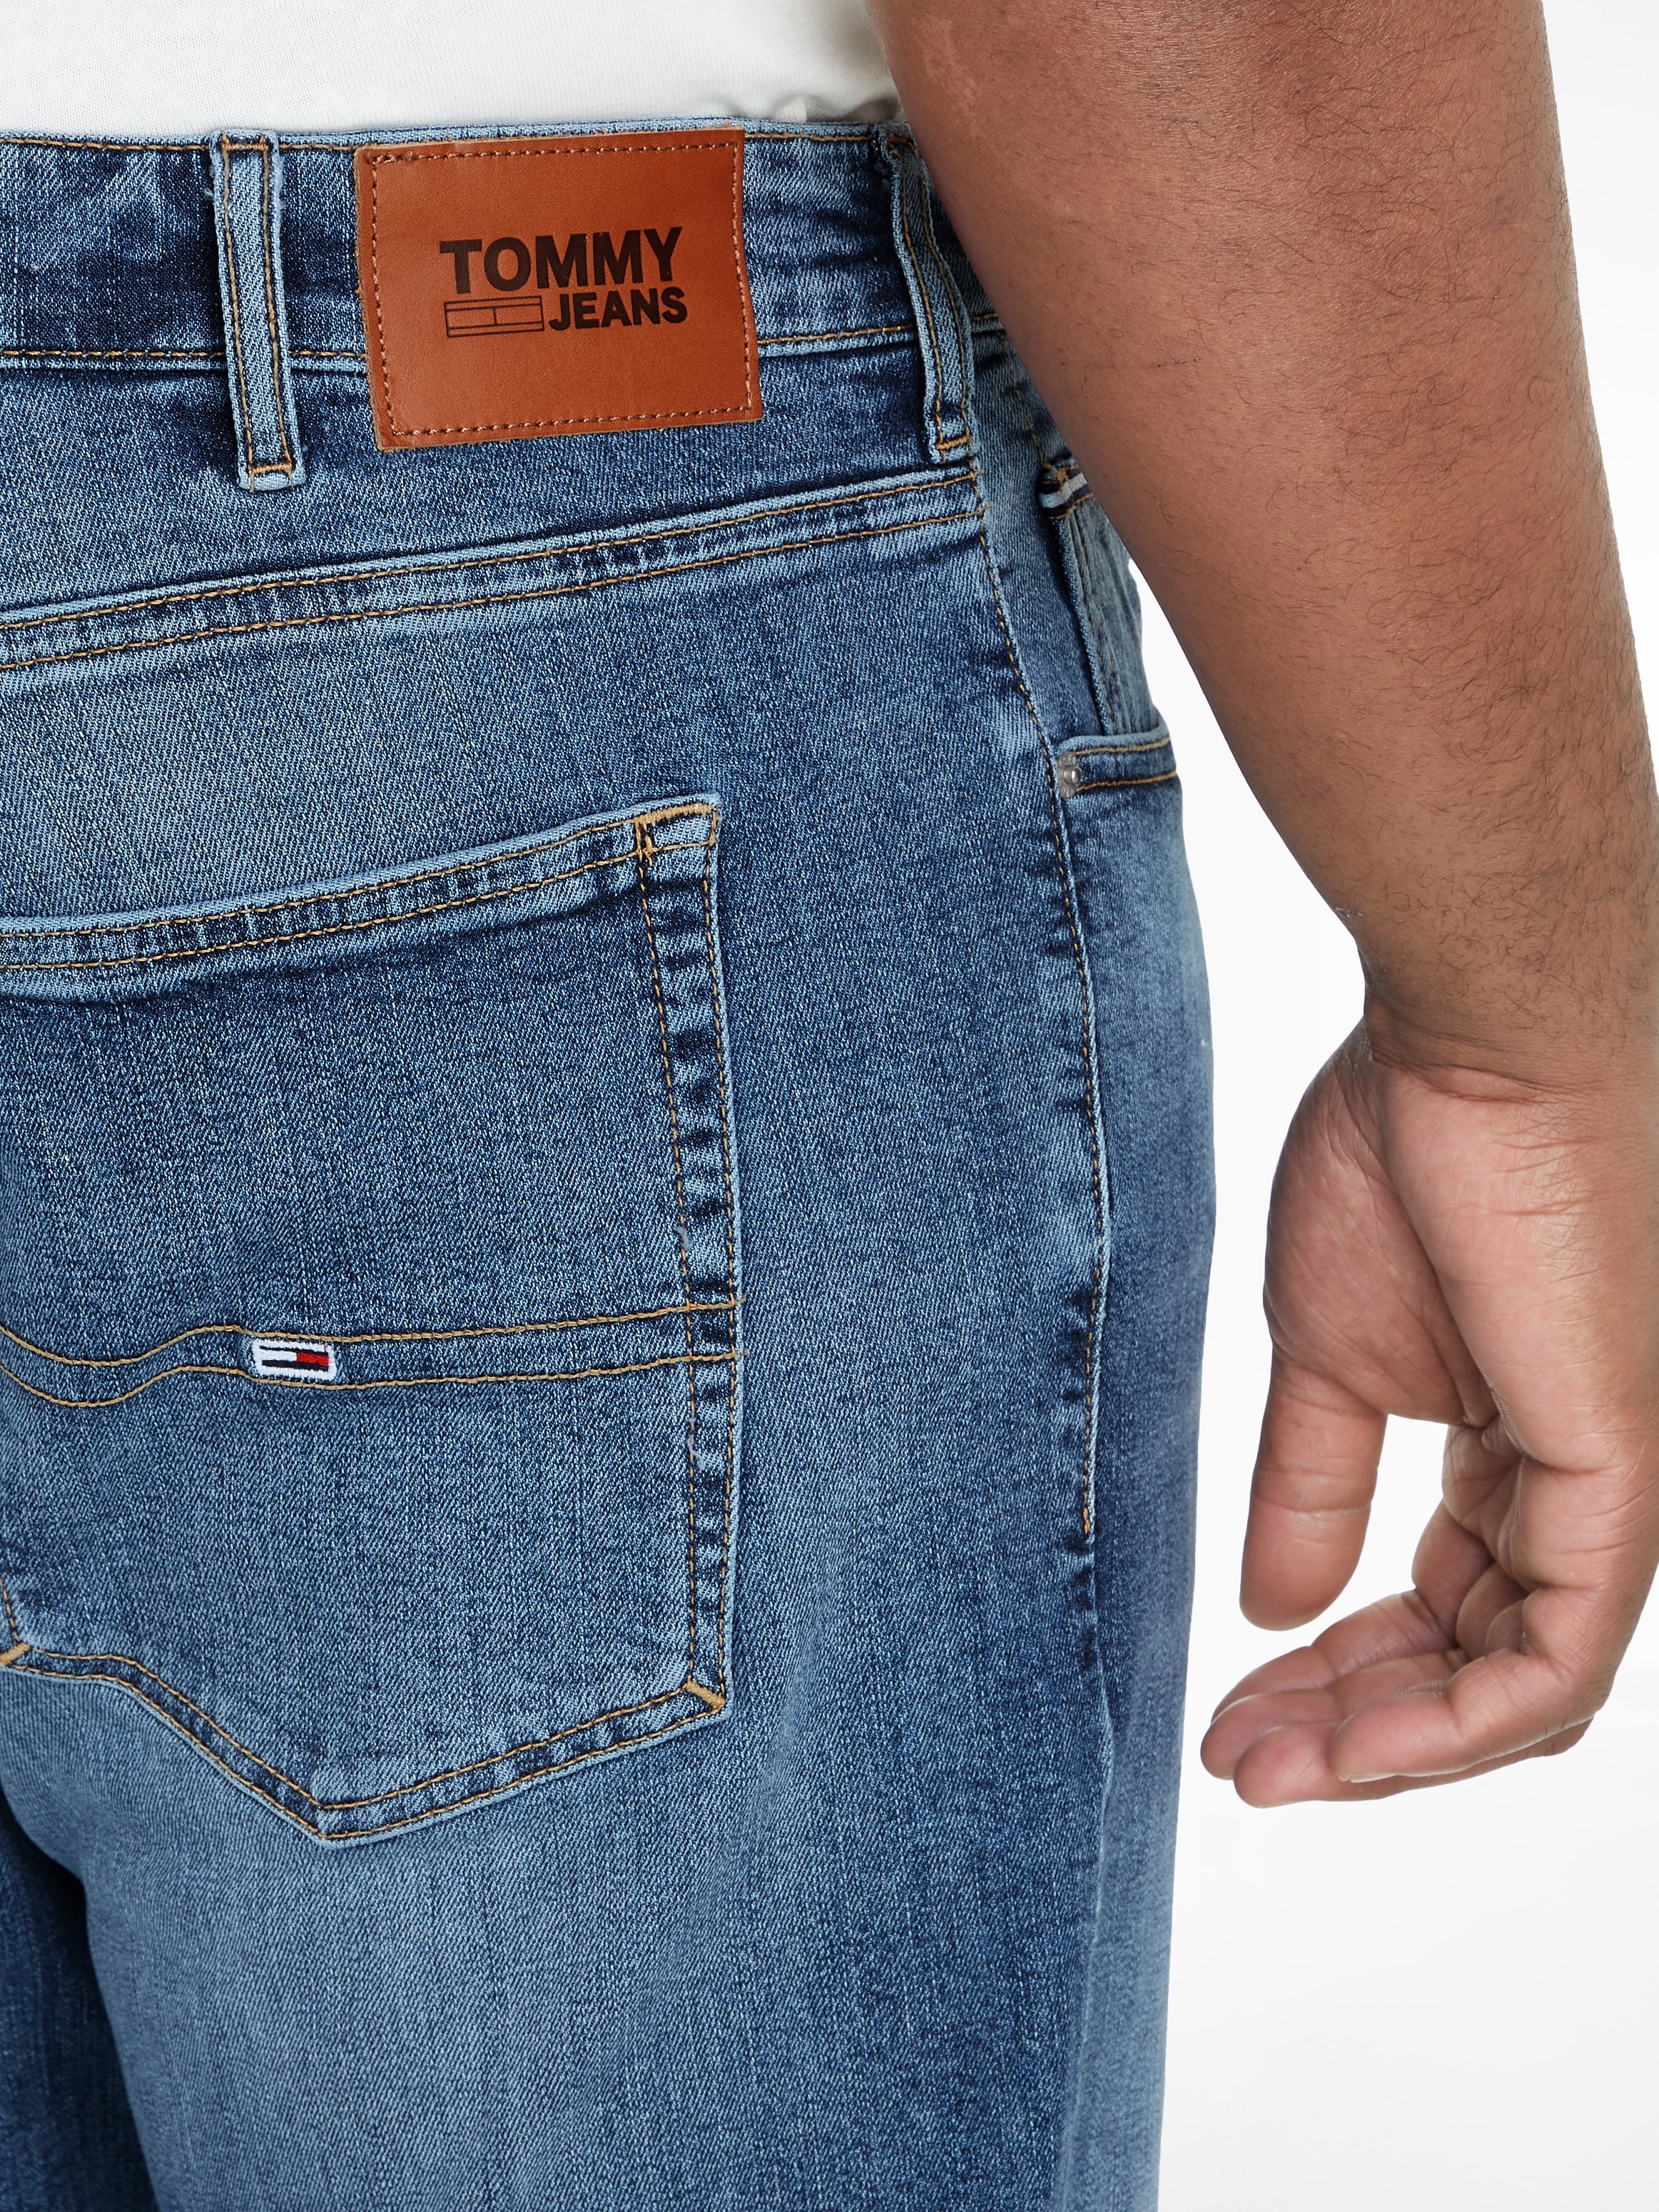 »AUSTIN online großen Tommy PLUS Jeans DG1219«, in 5-Pocket-Jeans Plus Größen bestellen